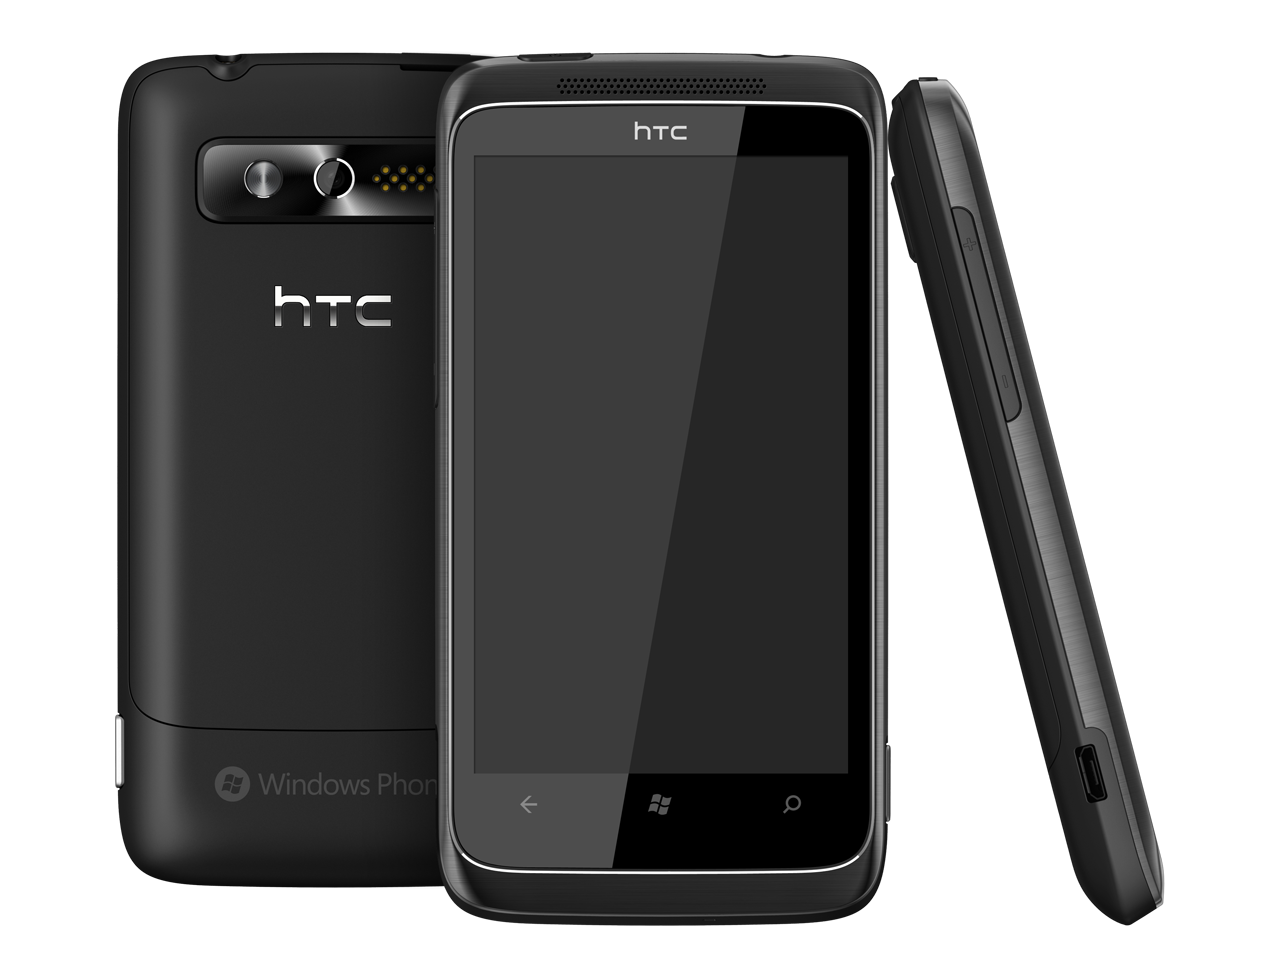 Unas imágenes más del HTC 7 Trophy